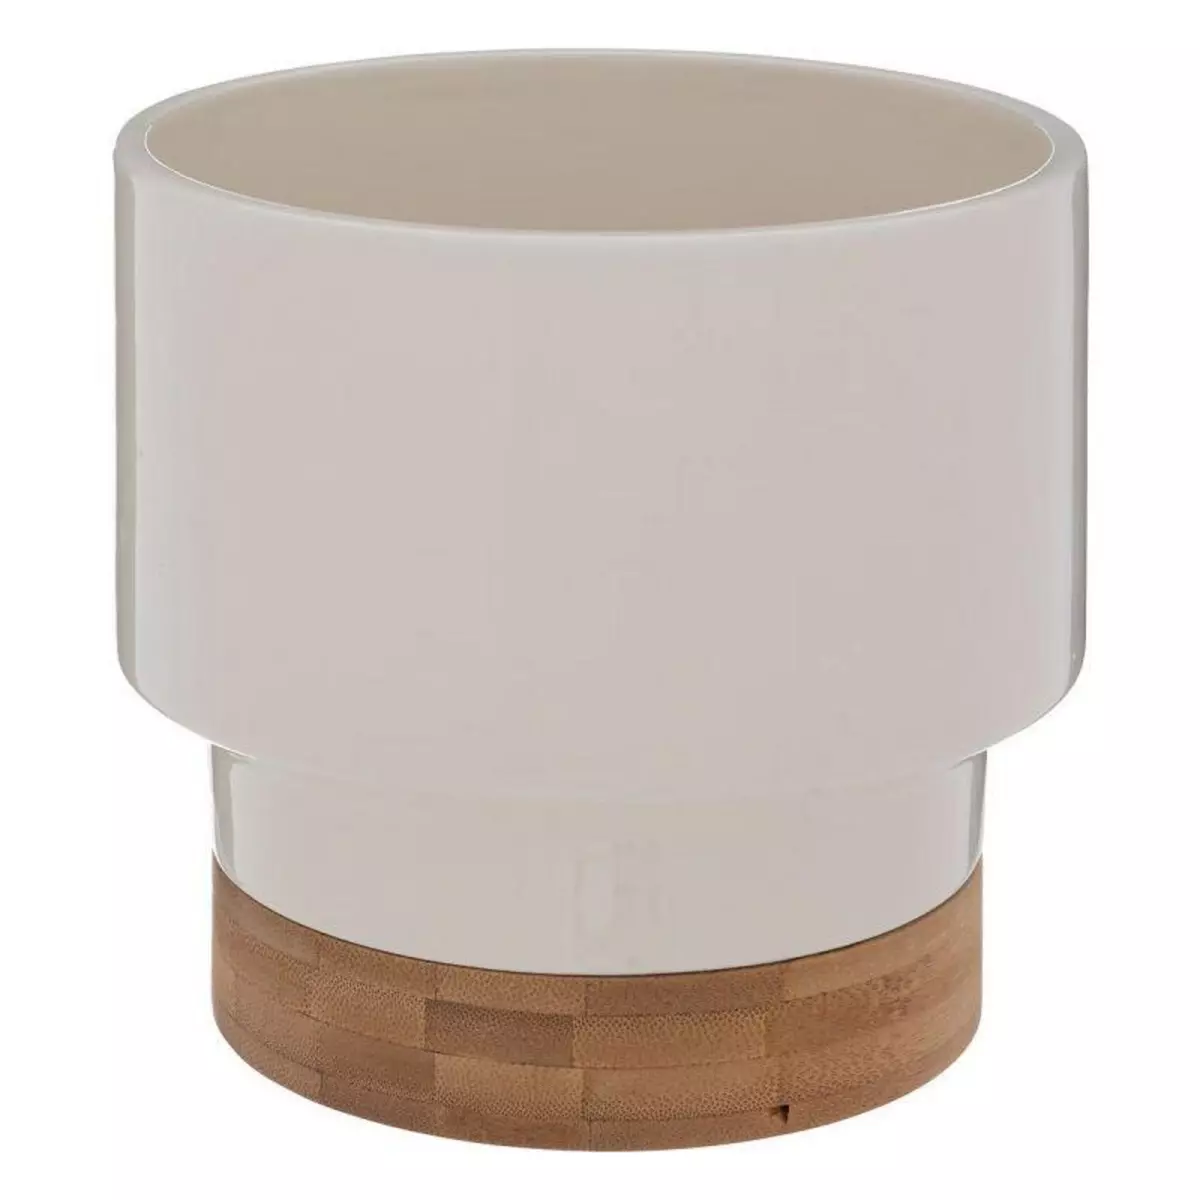  Cache-Pot Design  Le Collectionneur  16cm Blanc